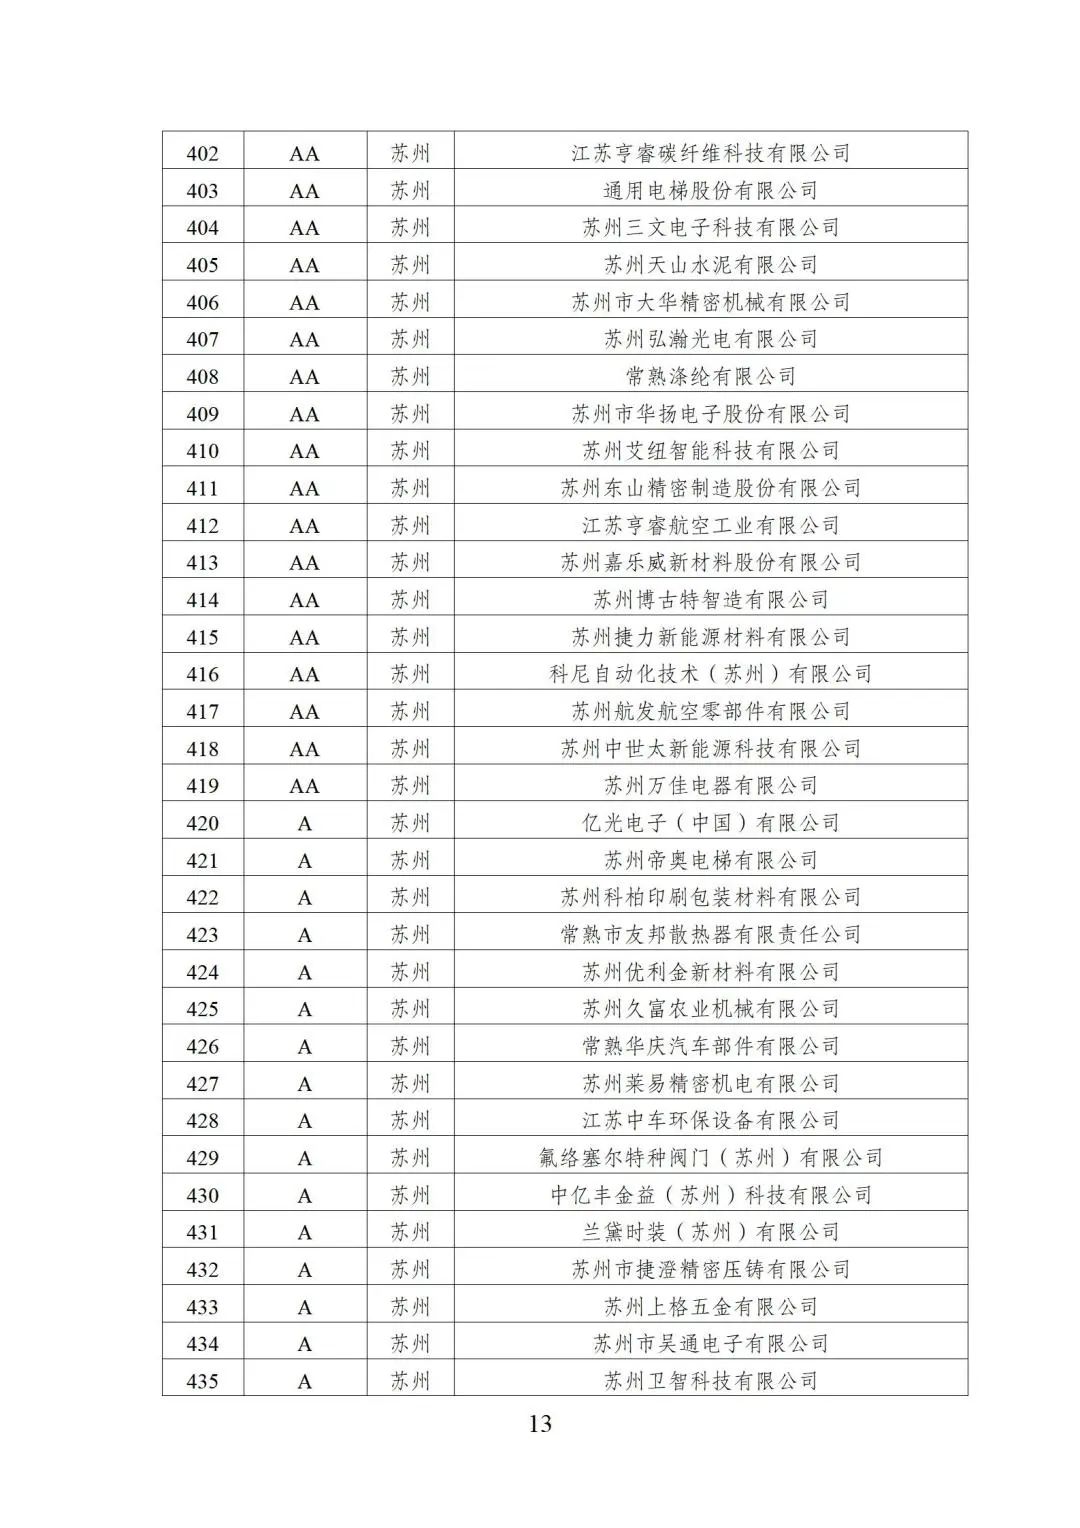 2022年江苏省两化融合管理体系贯标示范企业培育对象名单13.jpg